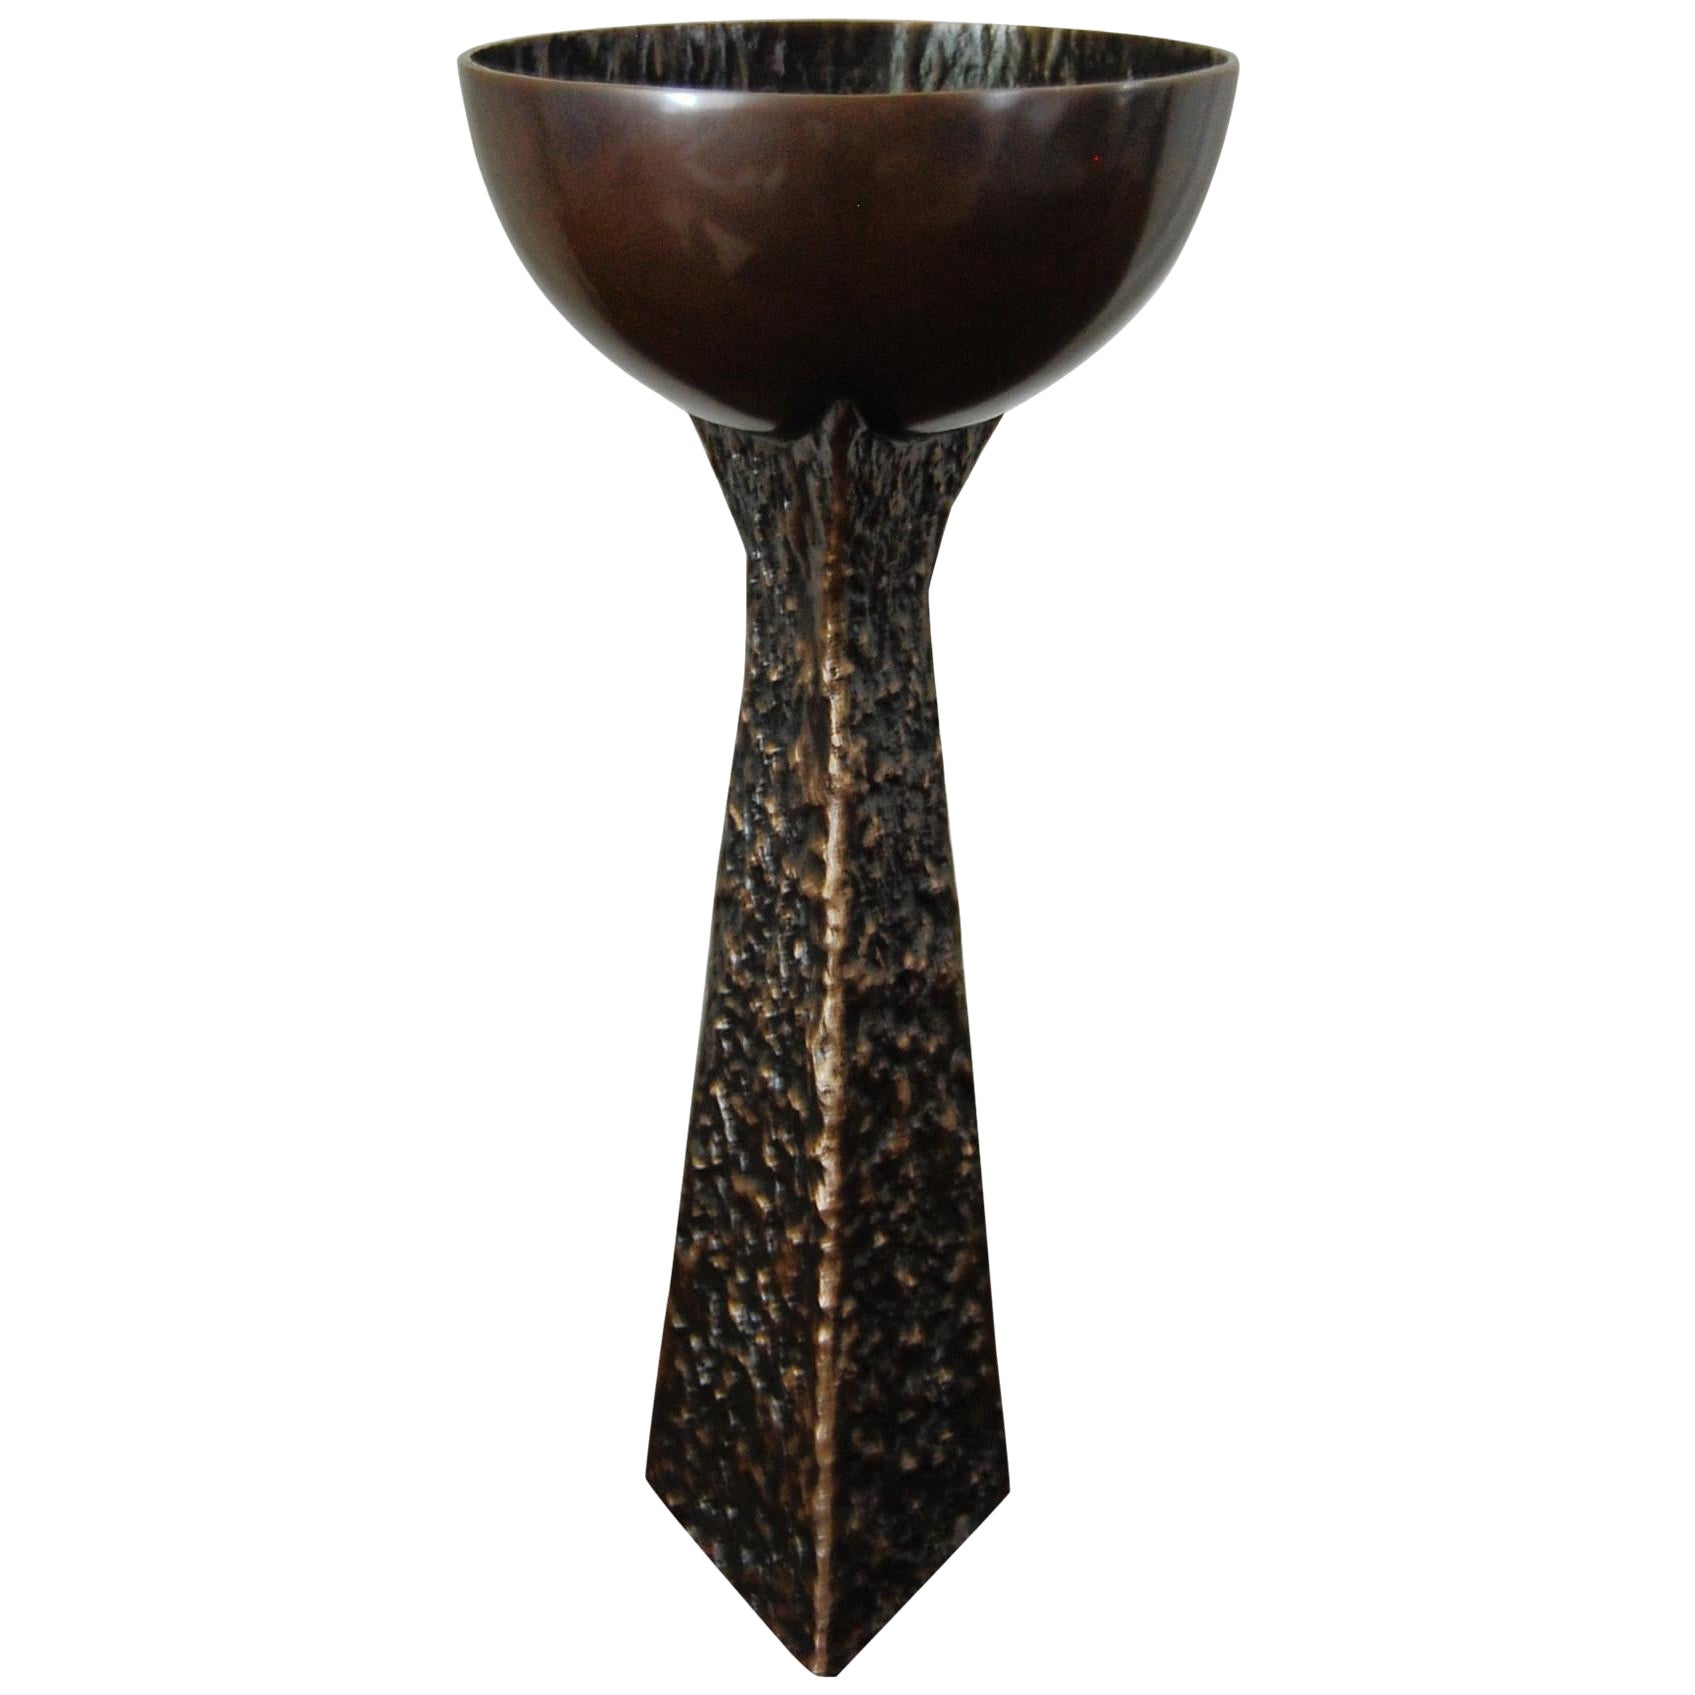 Cup-Vase aus dunkler Bronze von Fakasaka Design